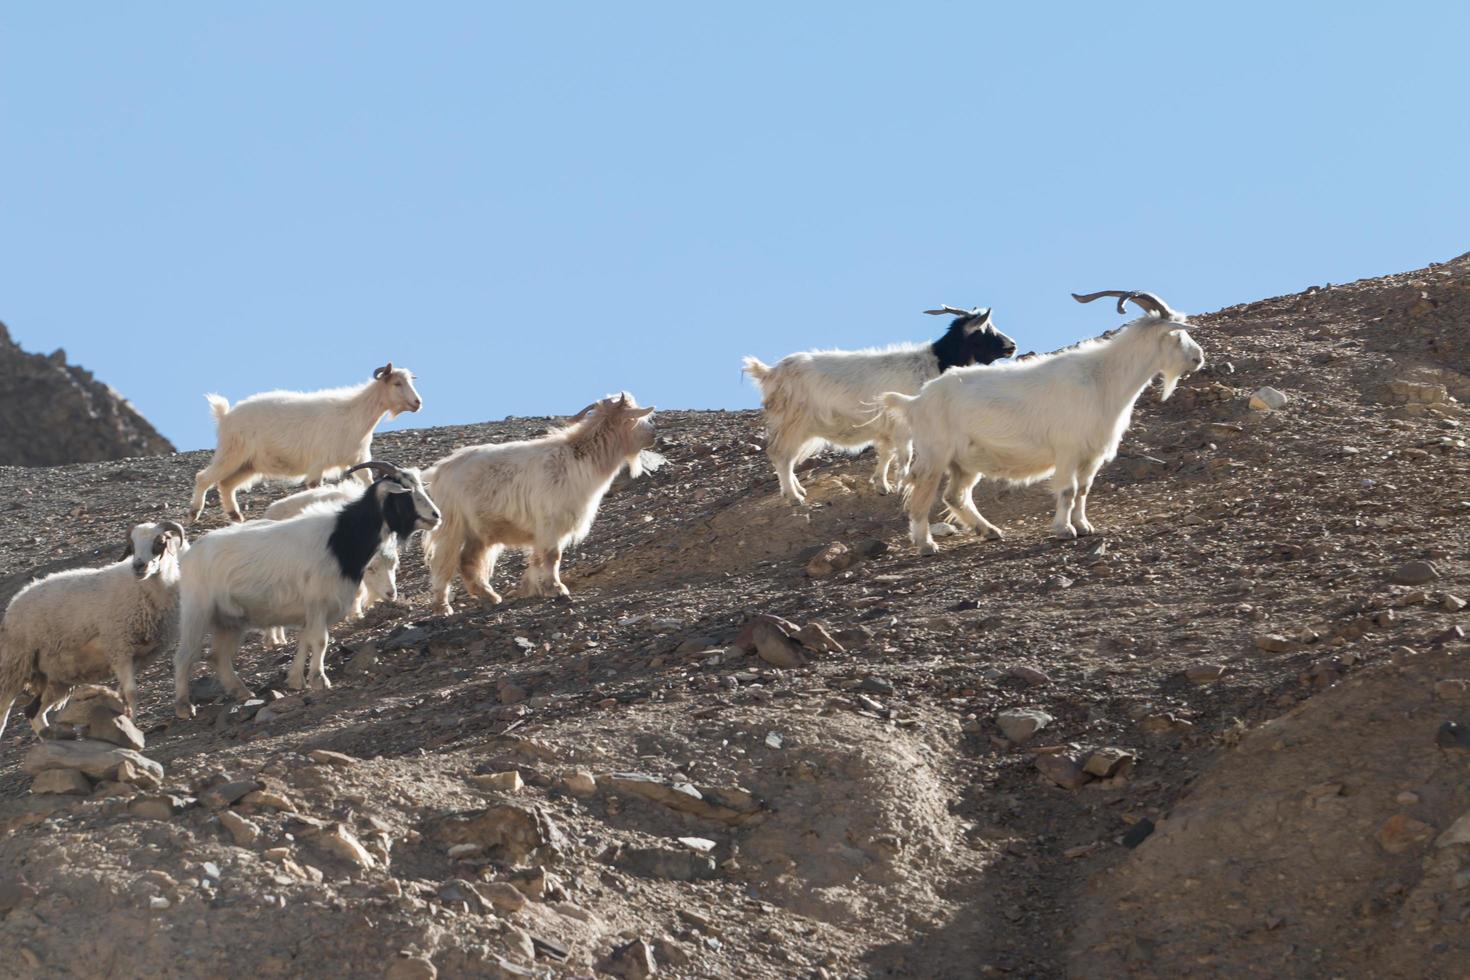 Ziegen auf dem Felsen im Mondland Lamayuru, Ladakh, Indien foto